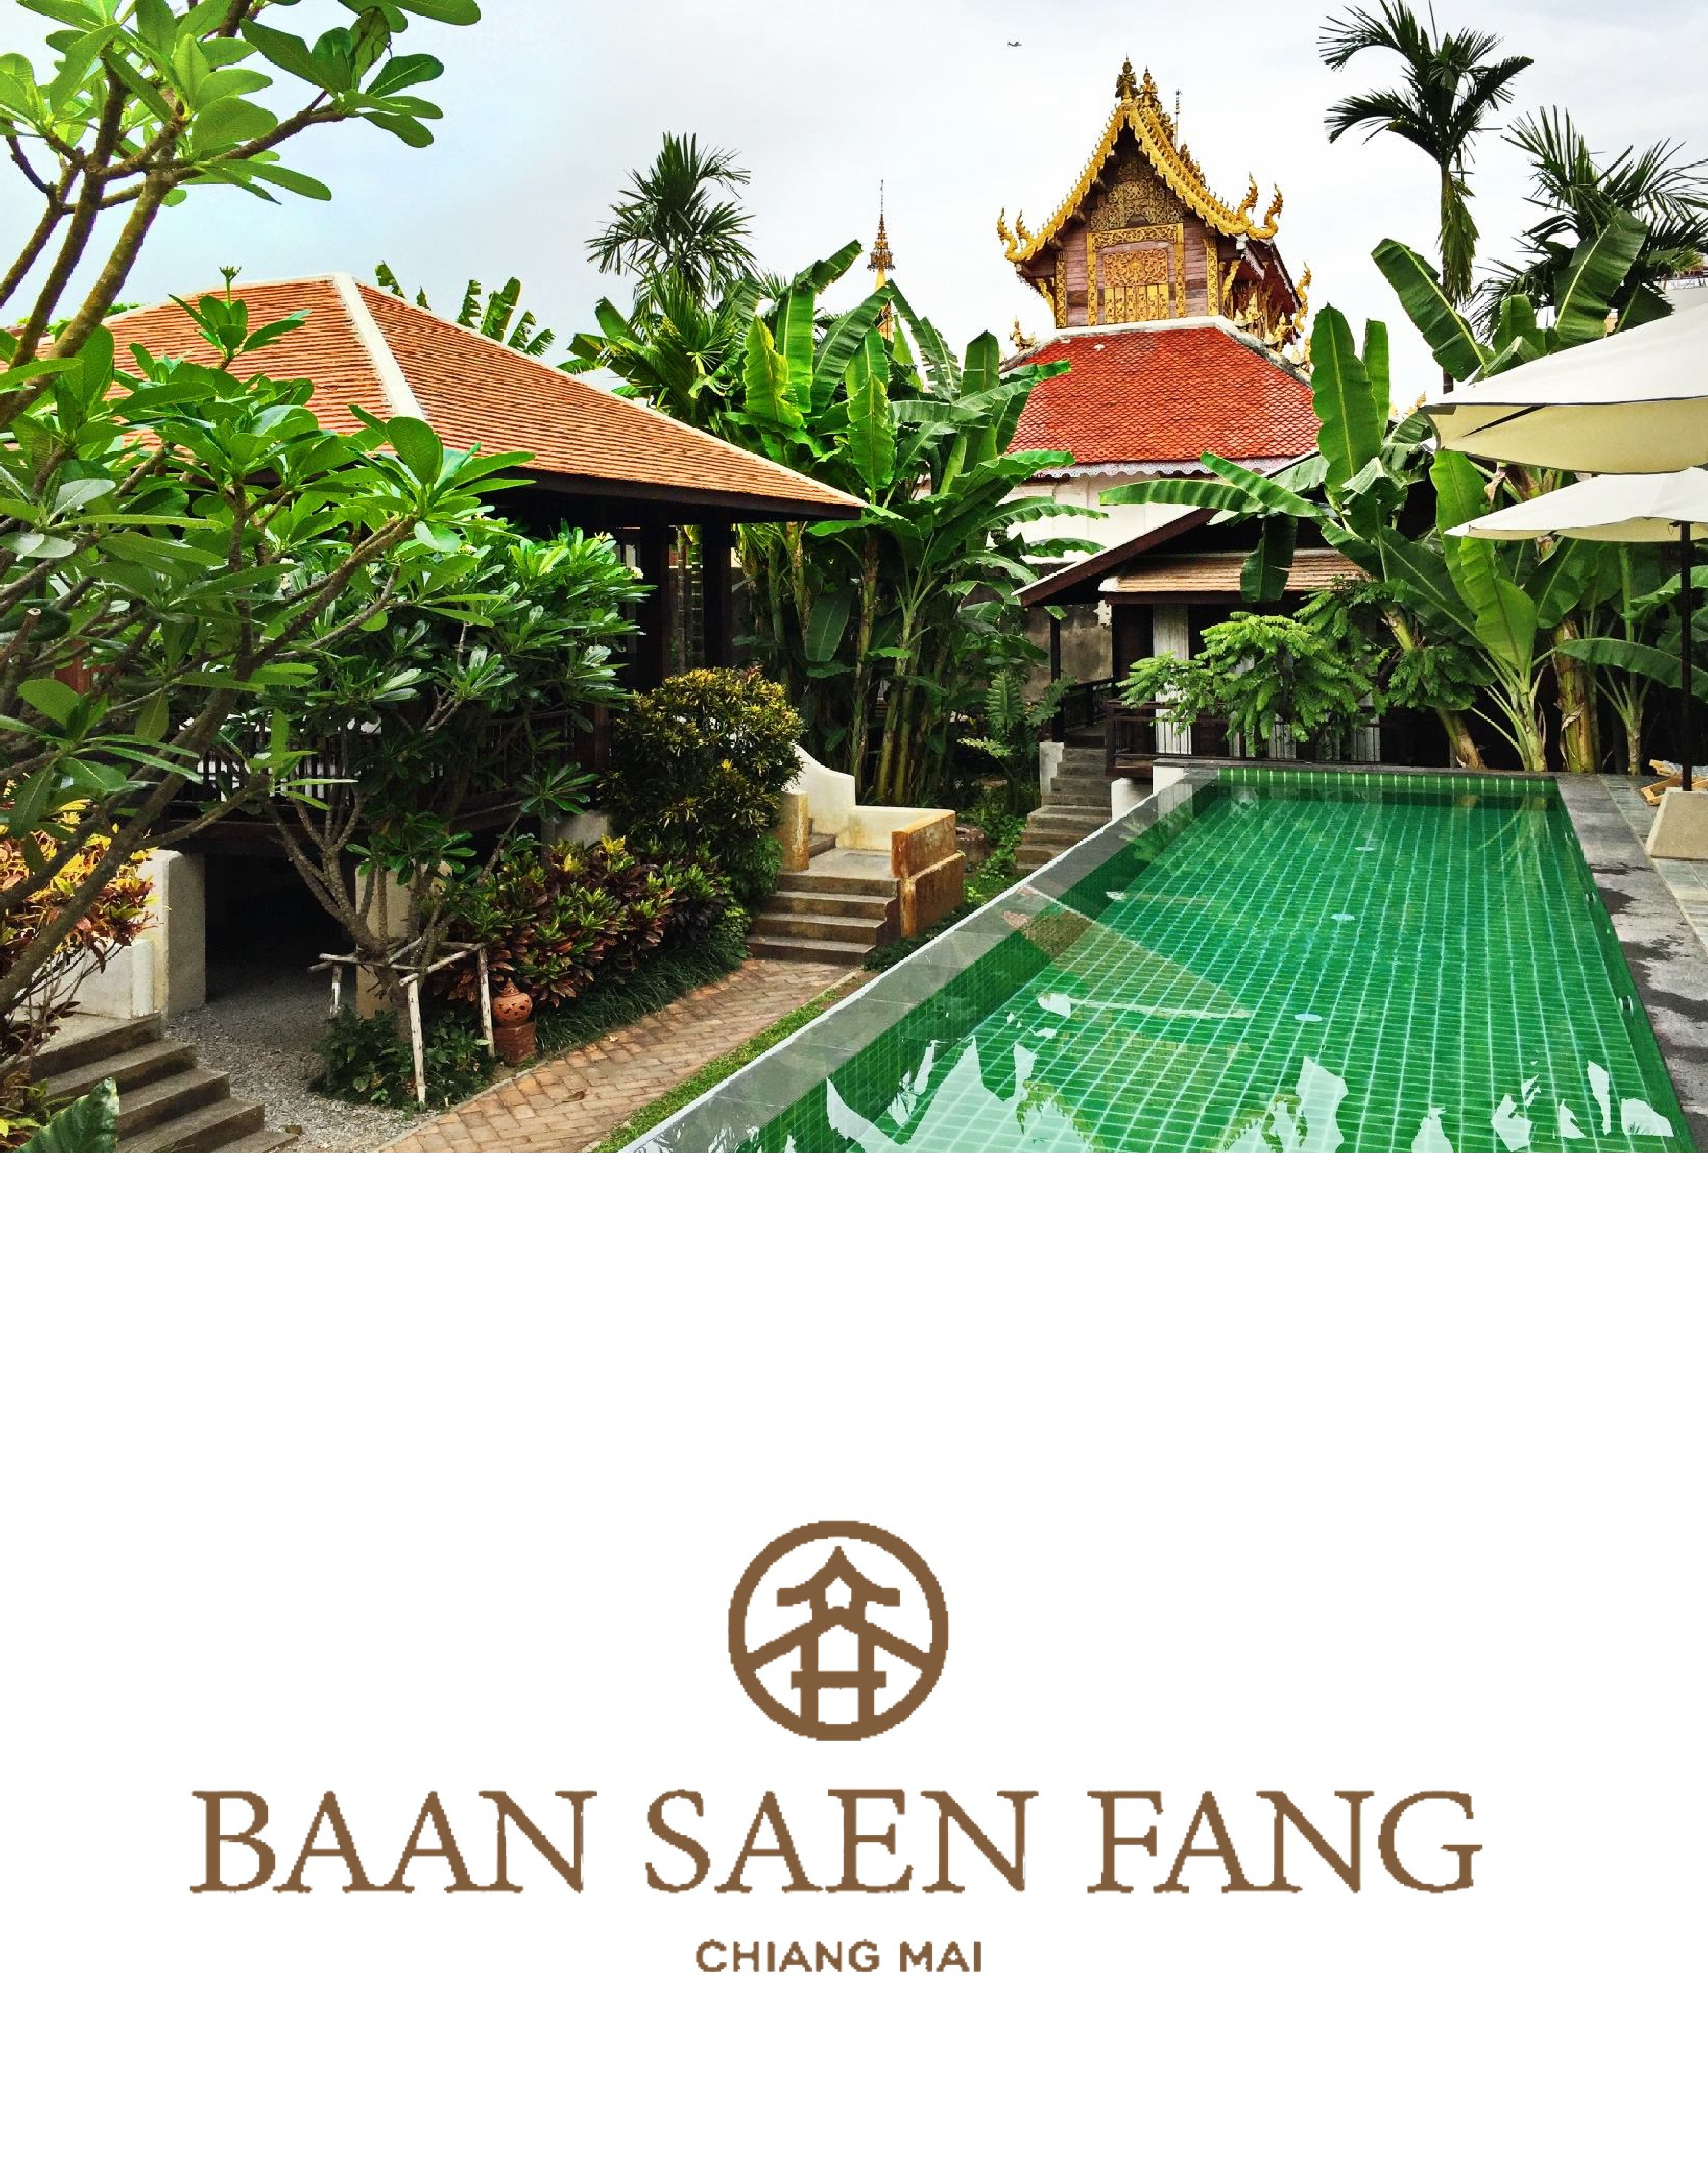 Baan Saen Fang Chiang Mai